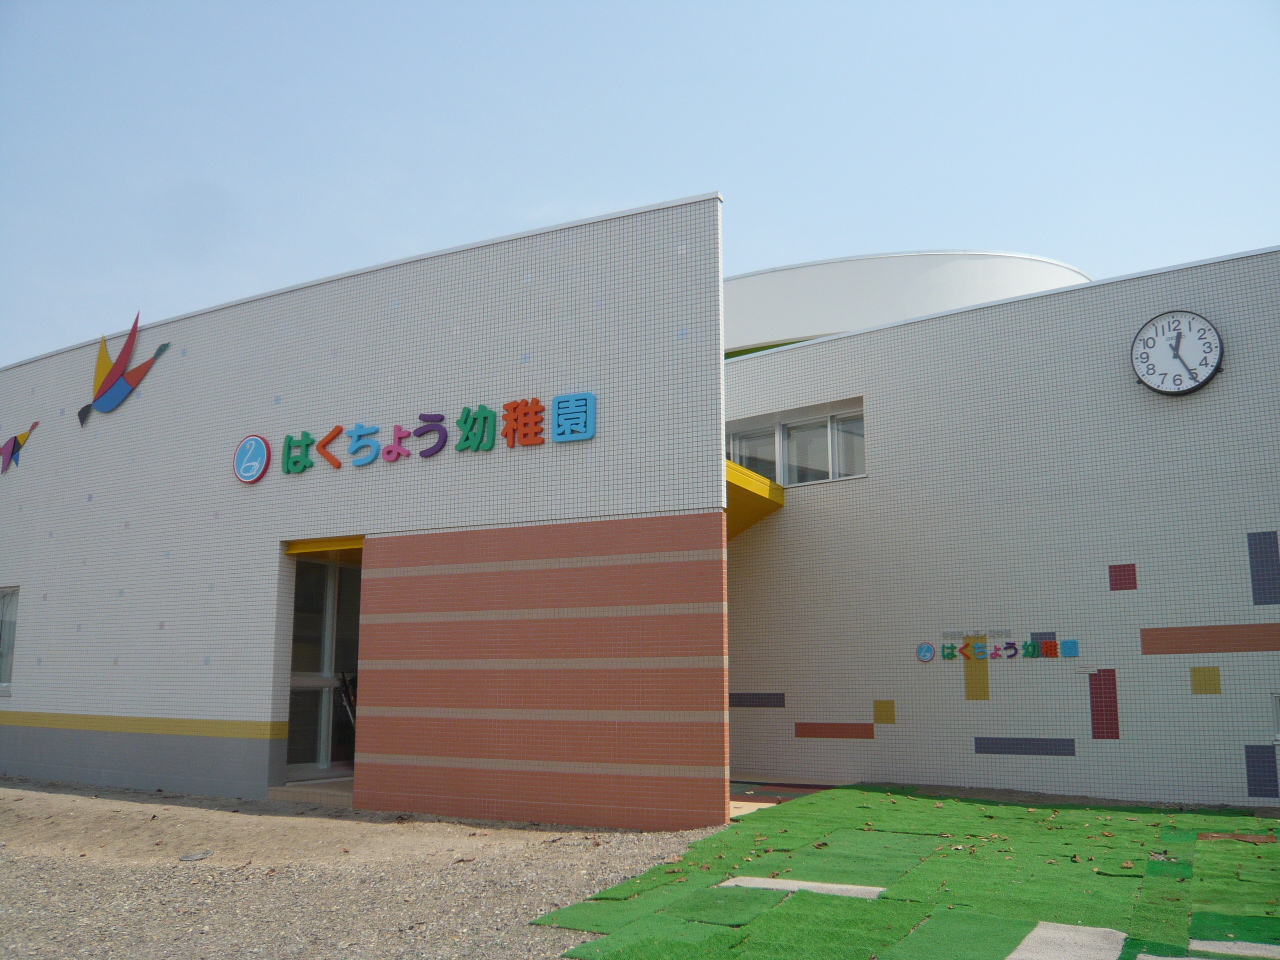 kindergarten ・ Nursery. Swan kindergarten (kindergarten ・ 1530m to the nursery)